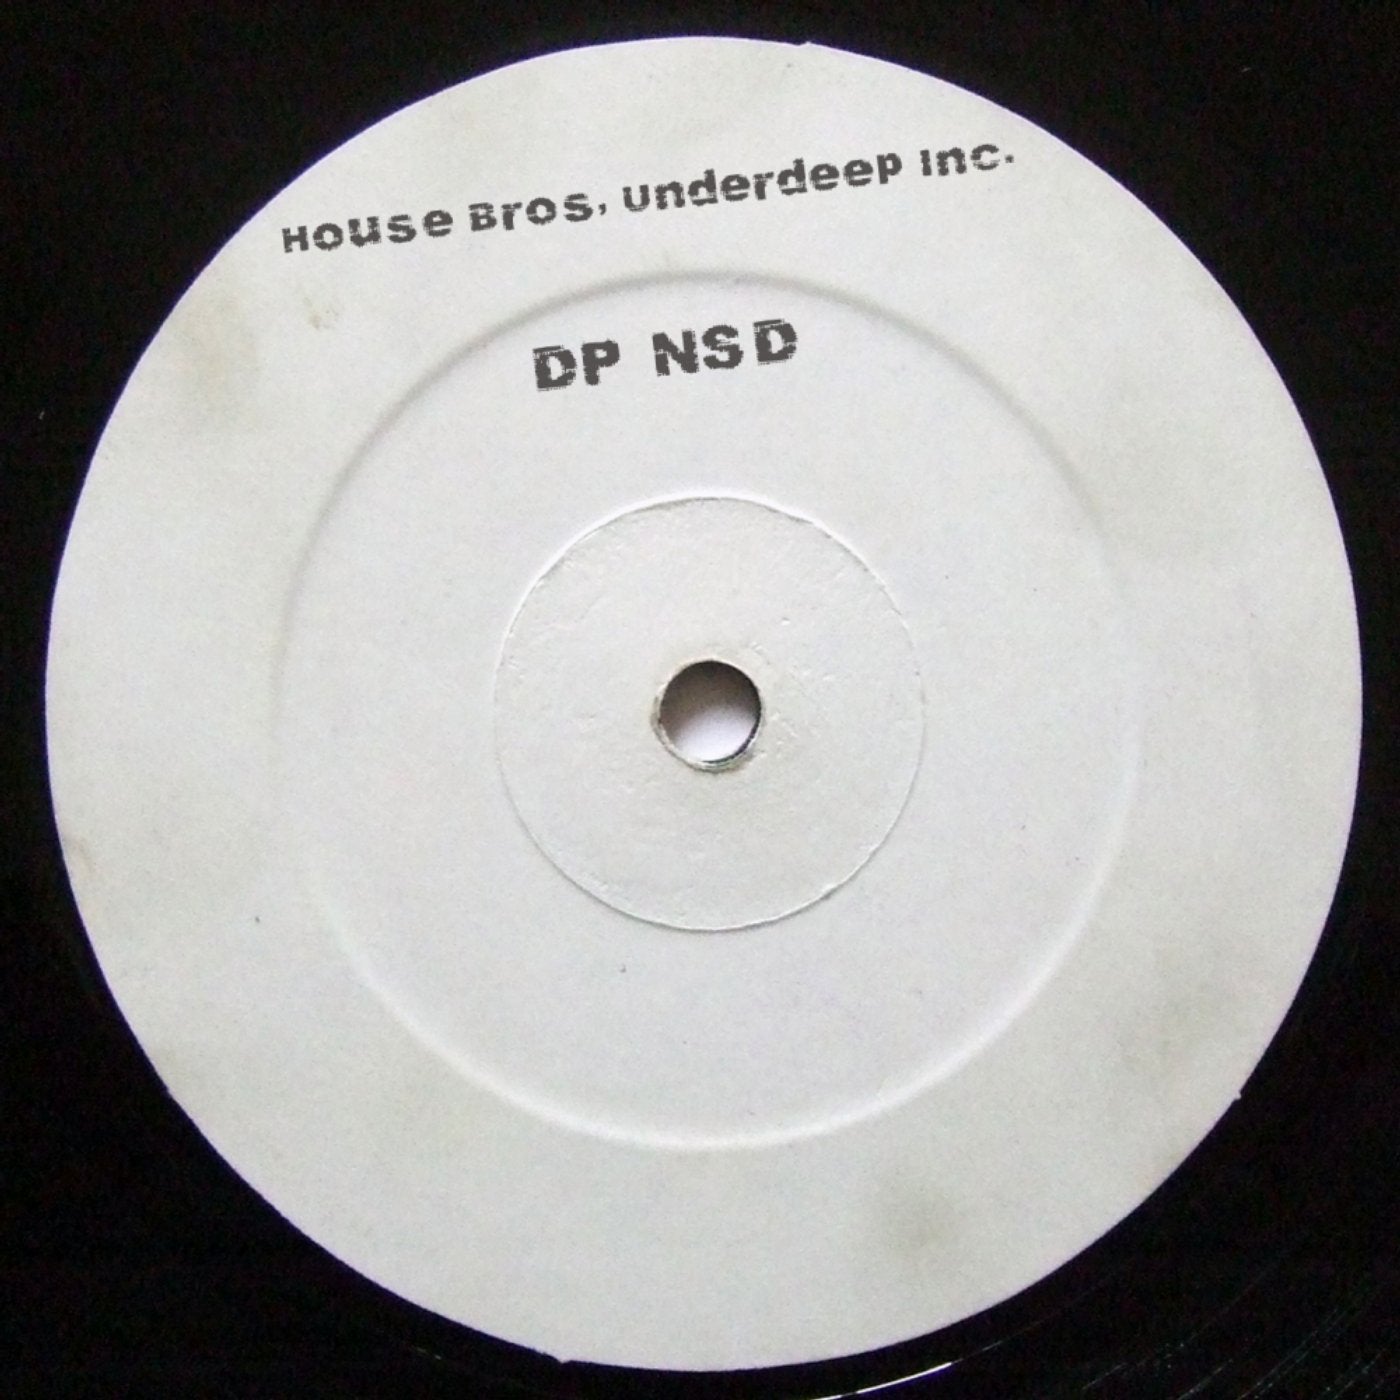 DP NSD (Club Mix)